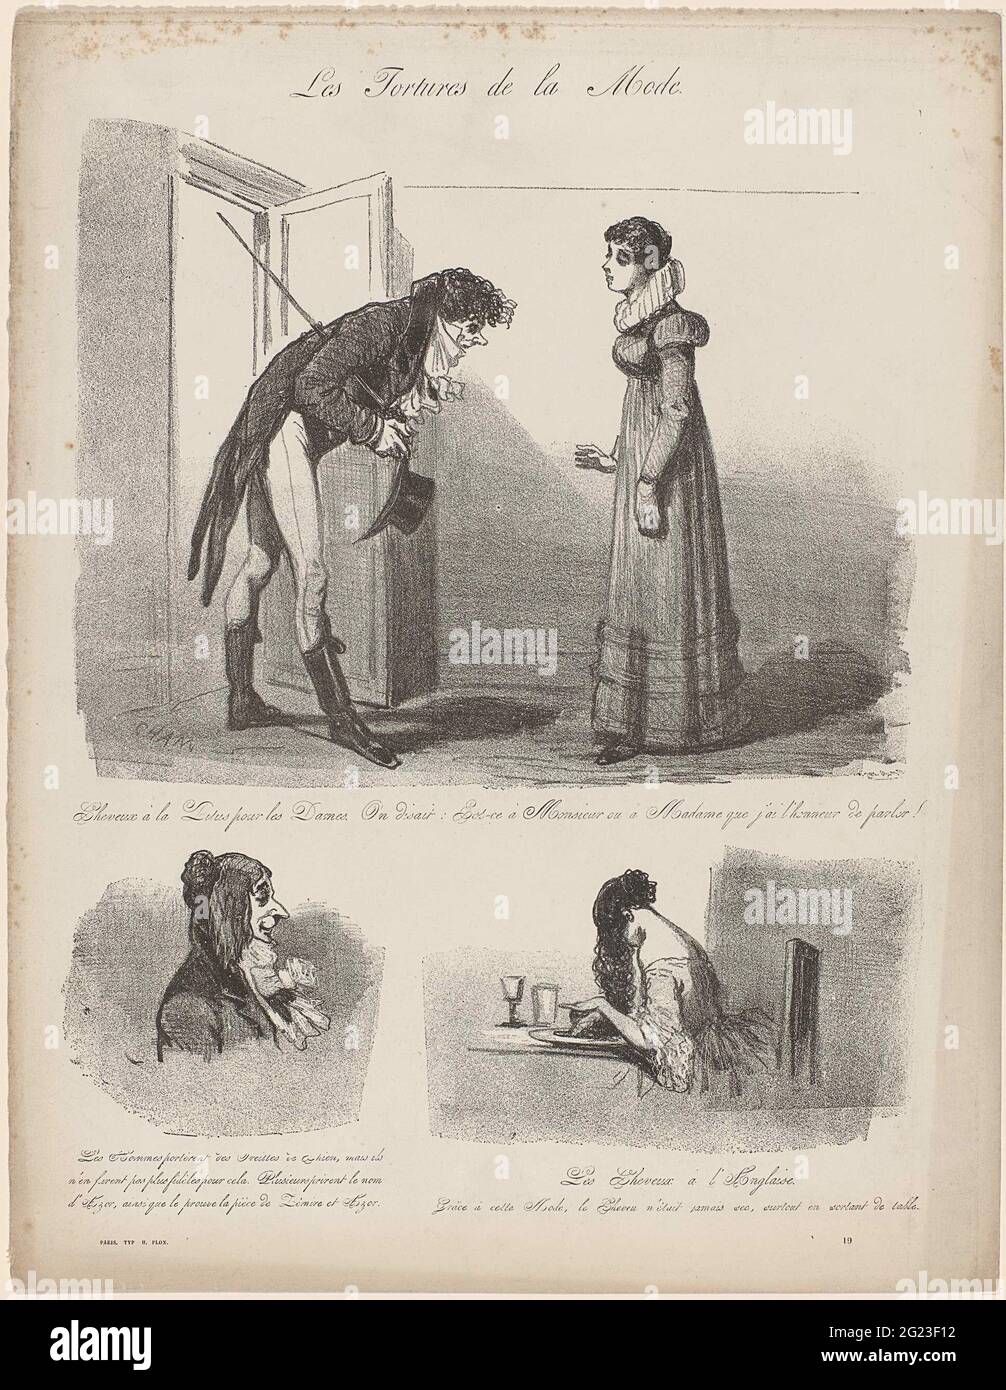 Les tortures de la Mode, ca. 1848, Nº 19: Cheveux à la Titus (...).  Caricatura de varios peinados. Arriba: El hombre en una puerta se dobla  para una mujer con un peinado '